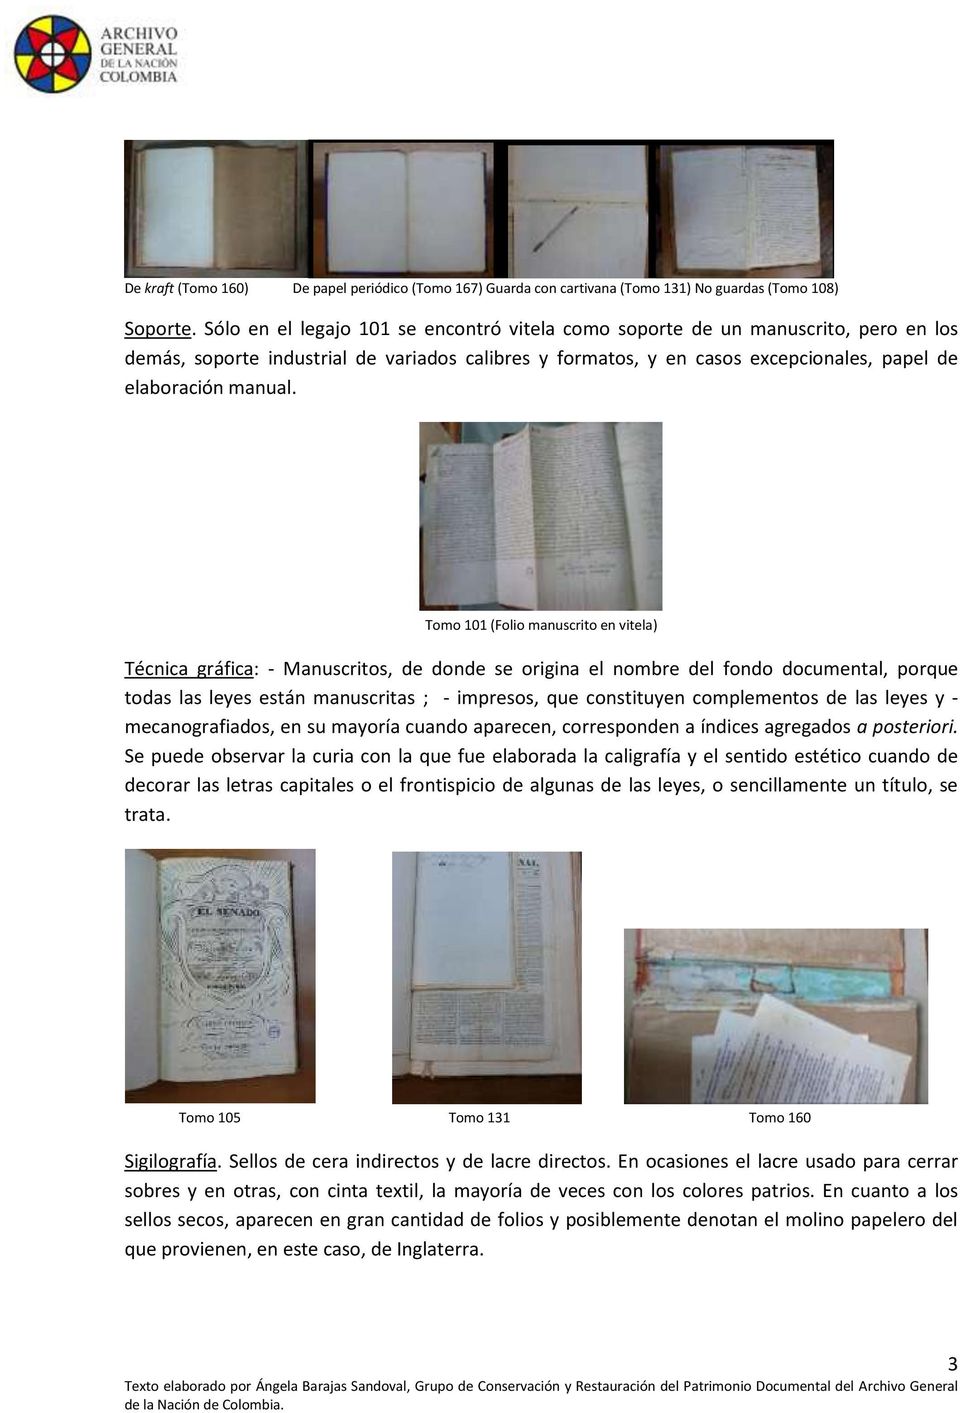 Tomo 101 (Folio manuscrito en vitela) Técnica gráfica: - Manuscritos, de donde se origina el nombre del fondo documental, porque todas las leyes están manuscritas ; - impresos, que constituyen